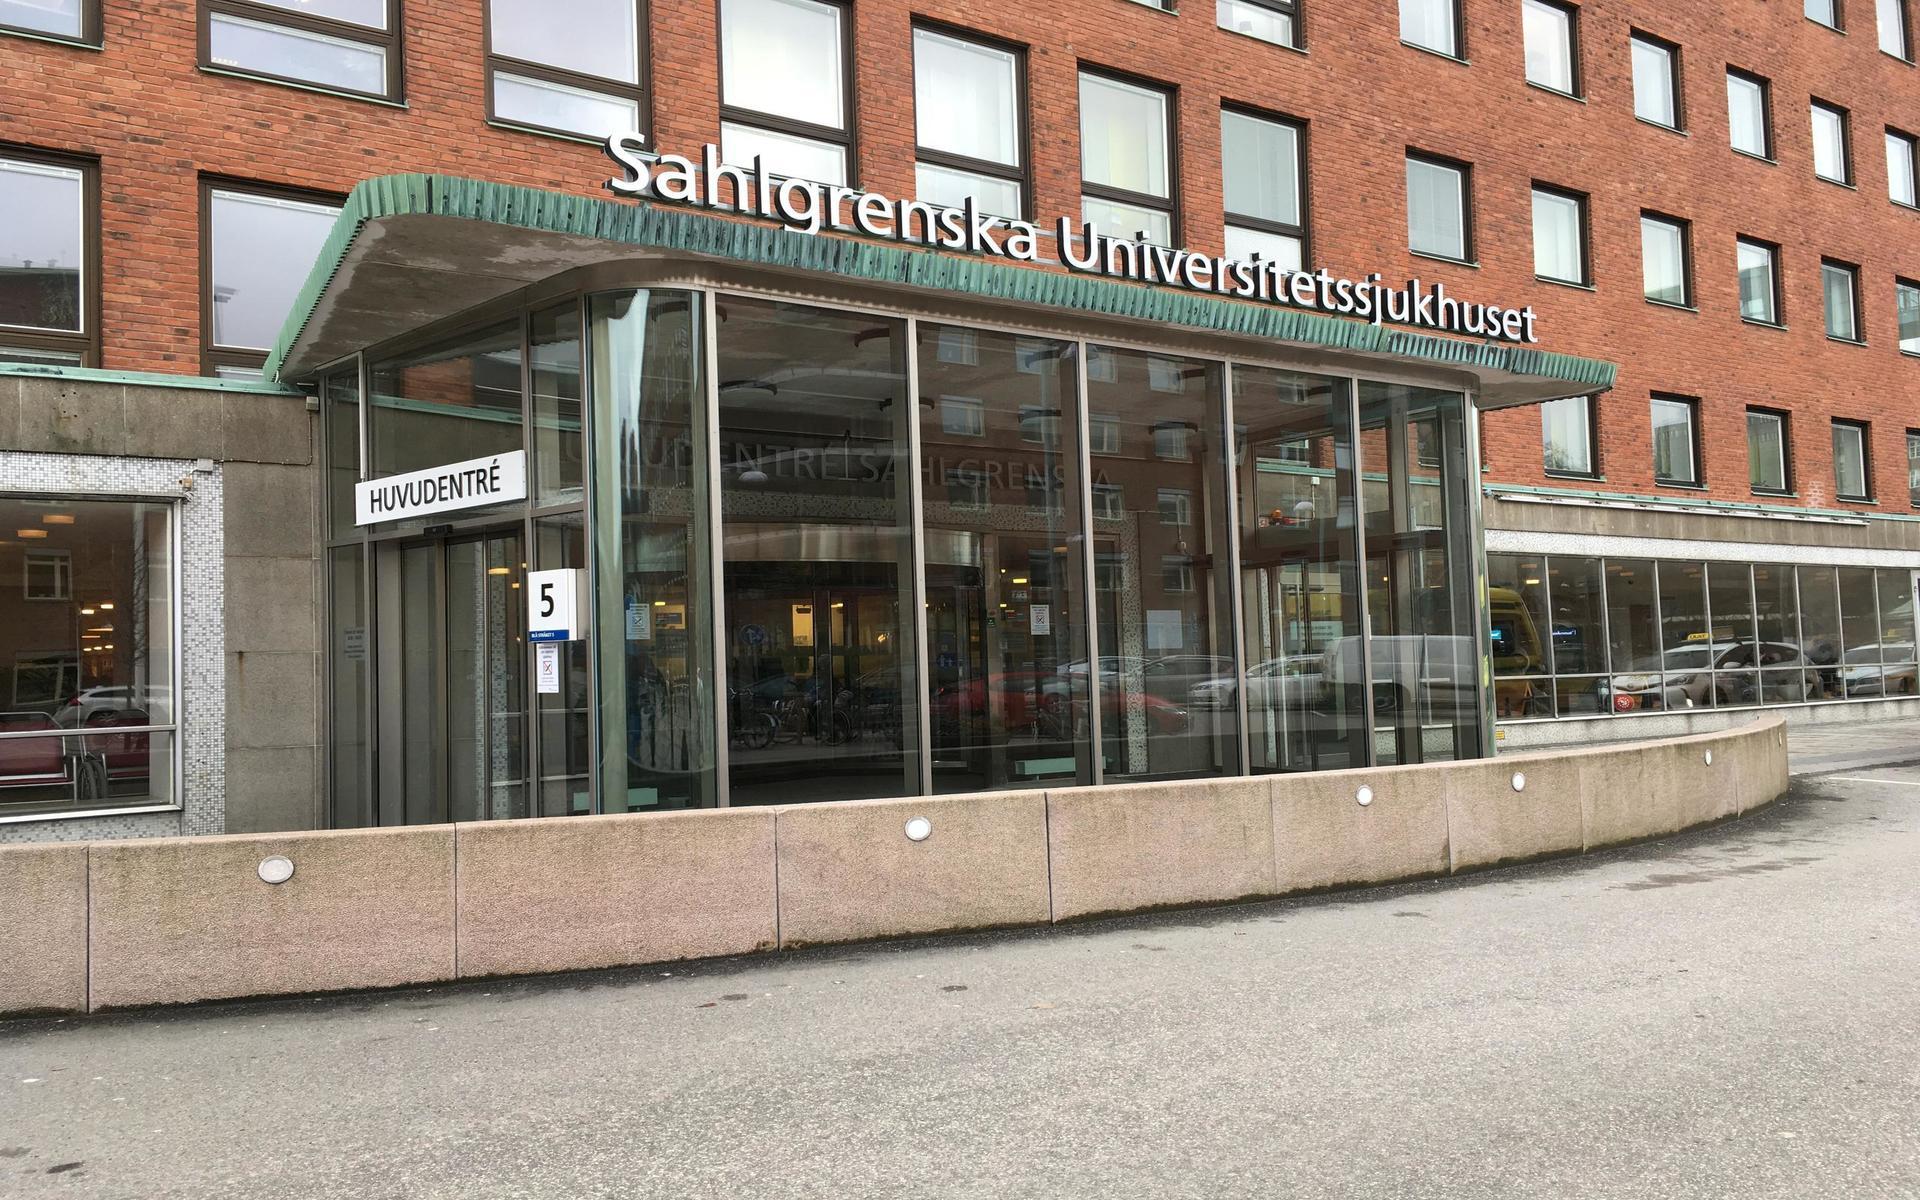 Entrén till Sahlgrenska Universitetssjukhuset i Göteborg.